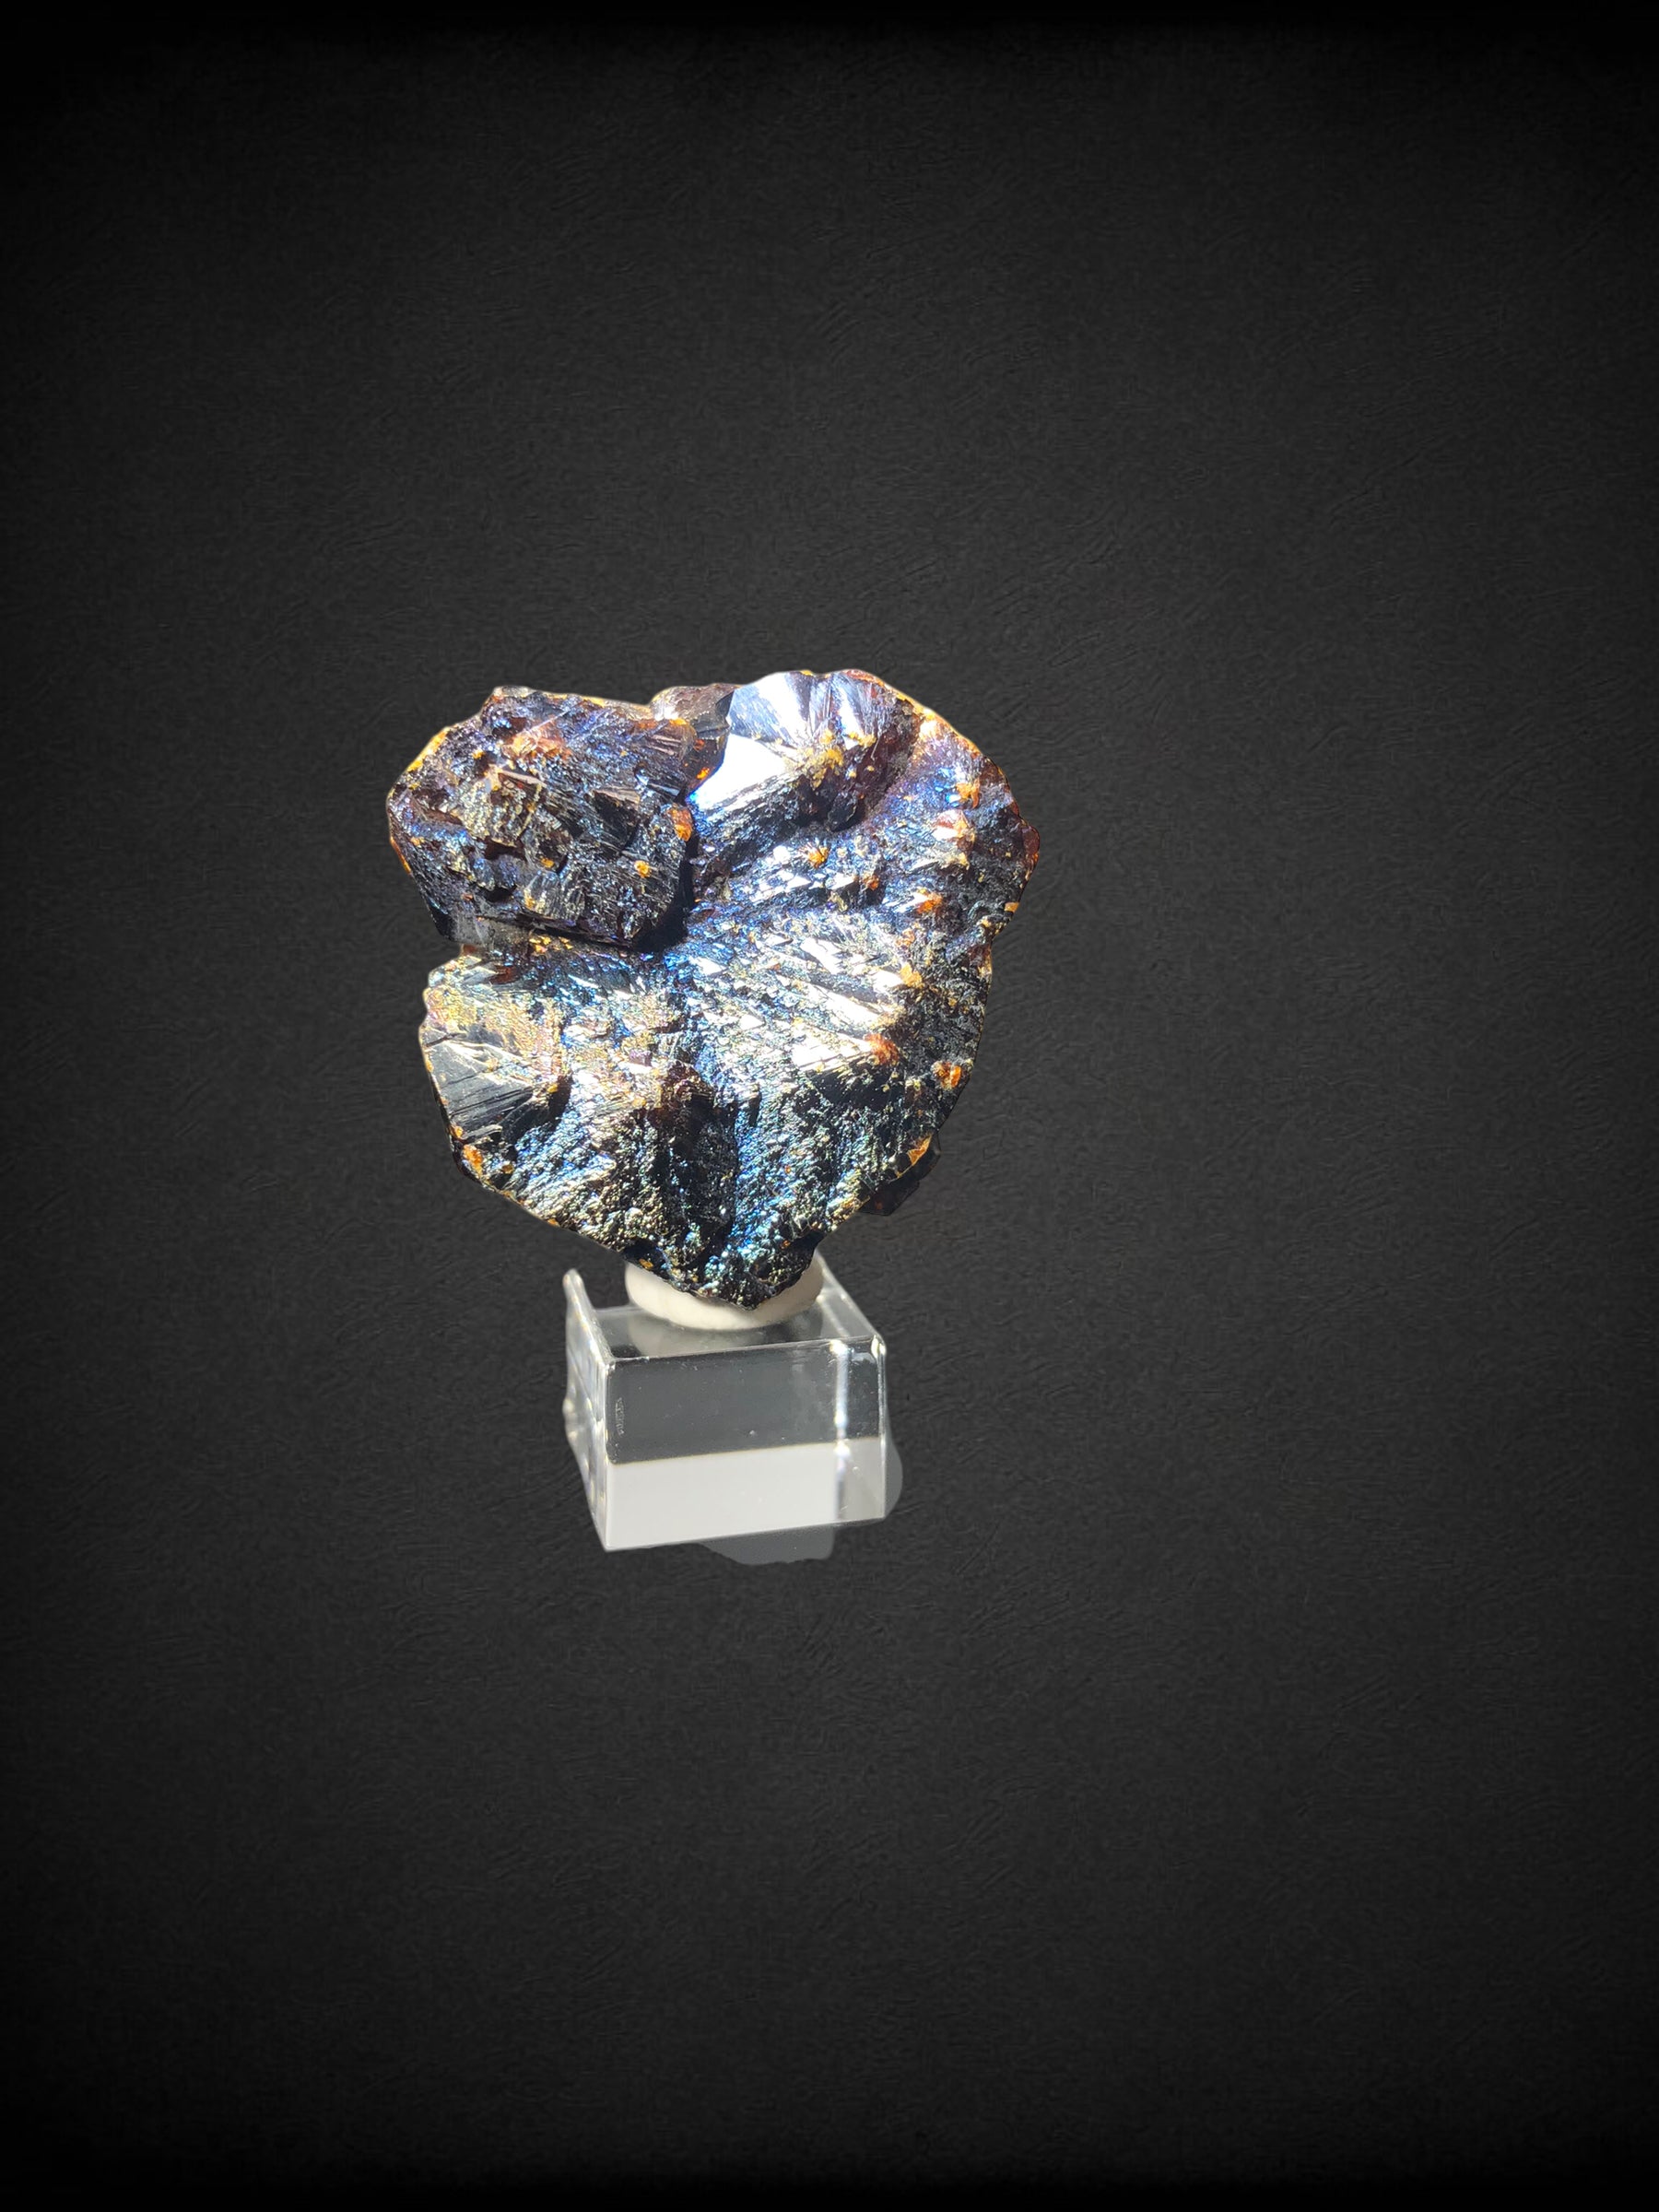 Iridescent Sphalerite